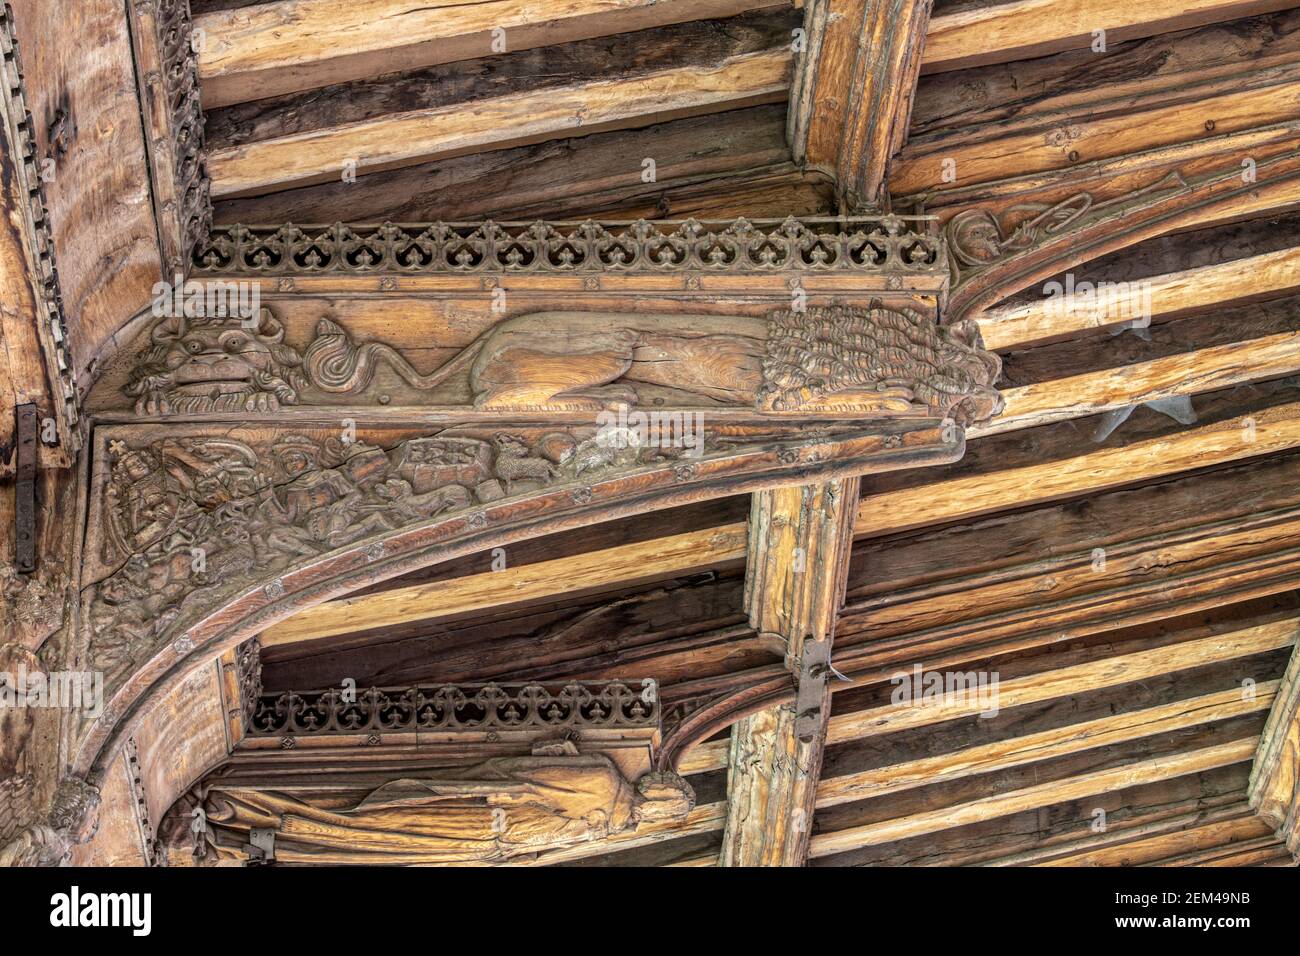 Das !5th Jahrhundert geschnitzte Hammerbeam Dach der Kirche St. Mary aus dem 13th. Jahrhundert in Mildenhall, Suffolk UK Stockfoto